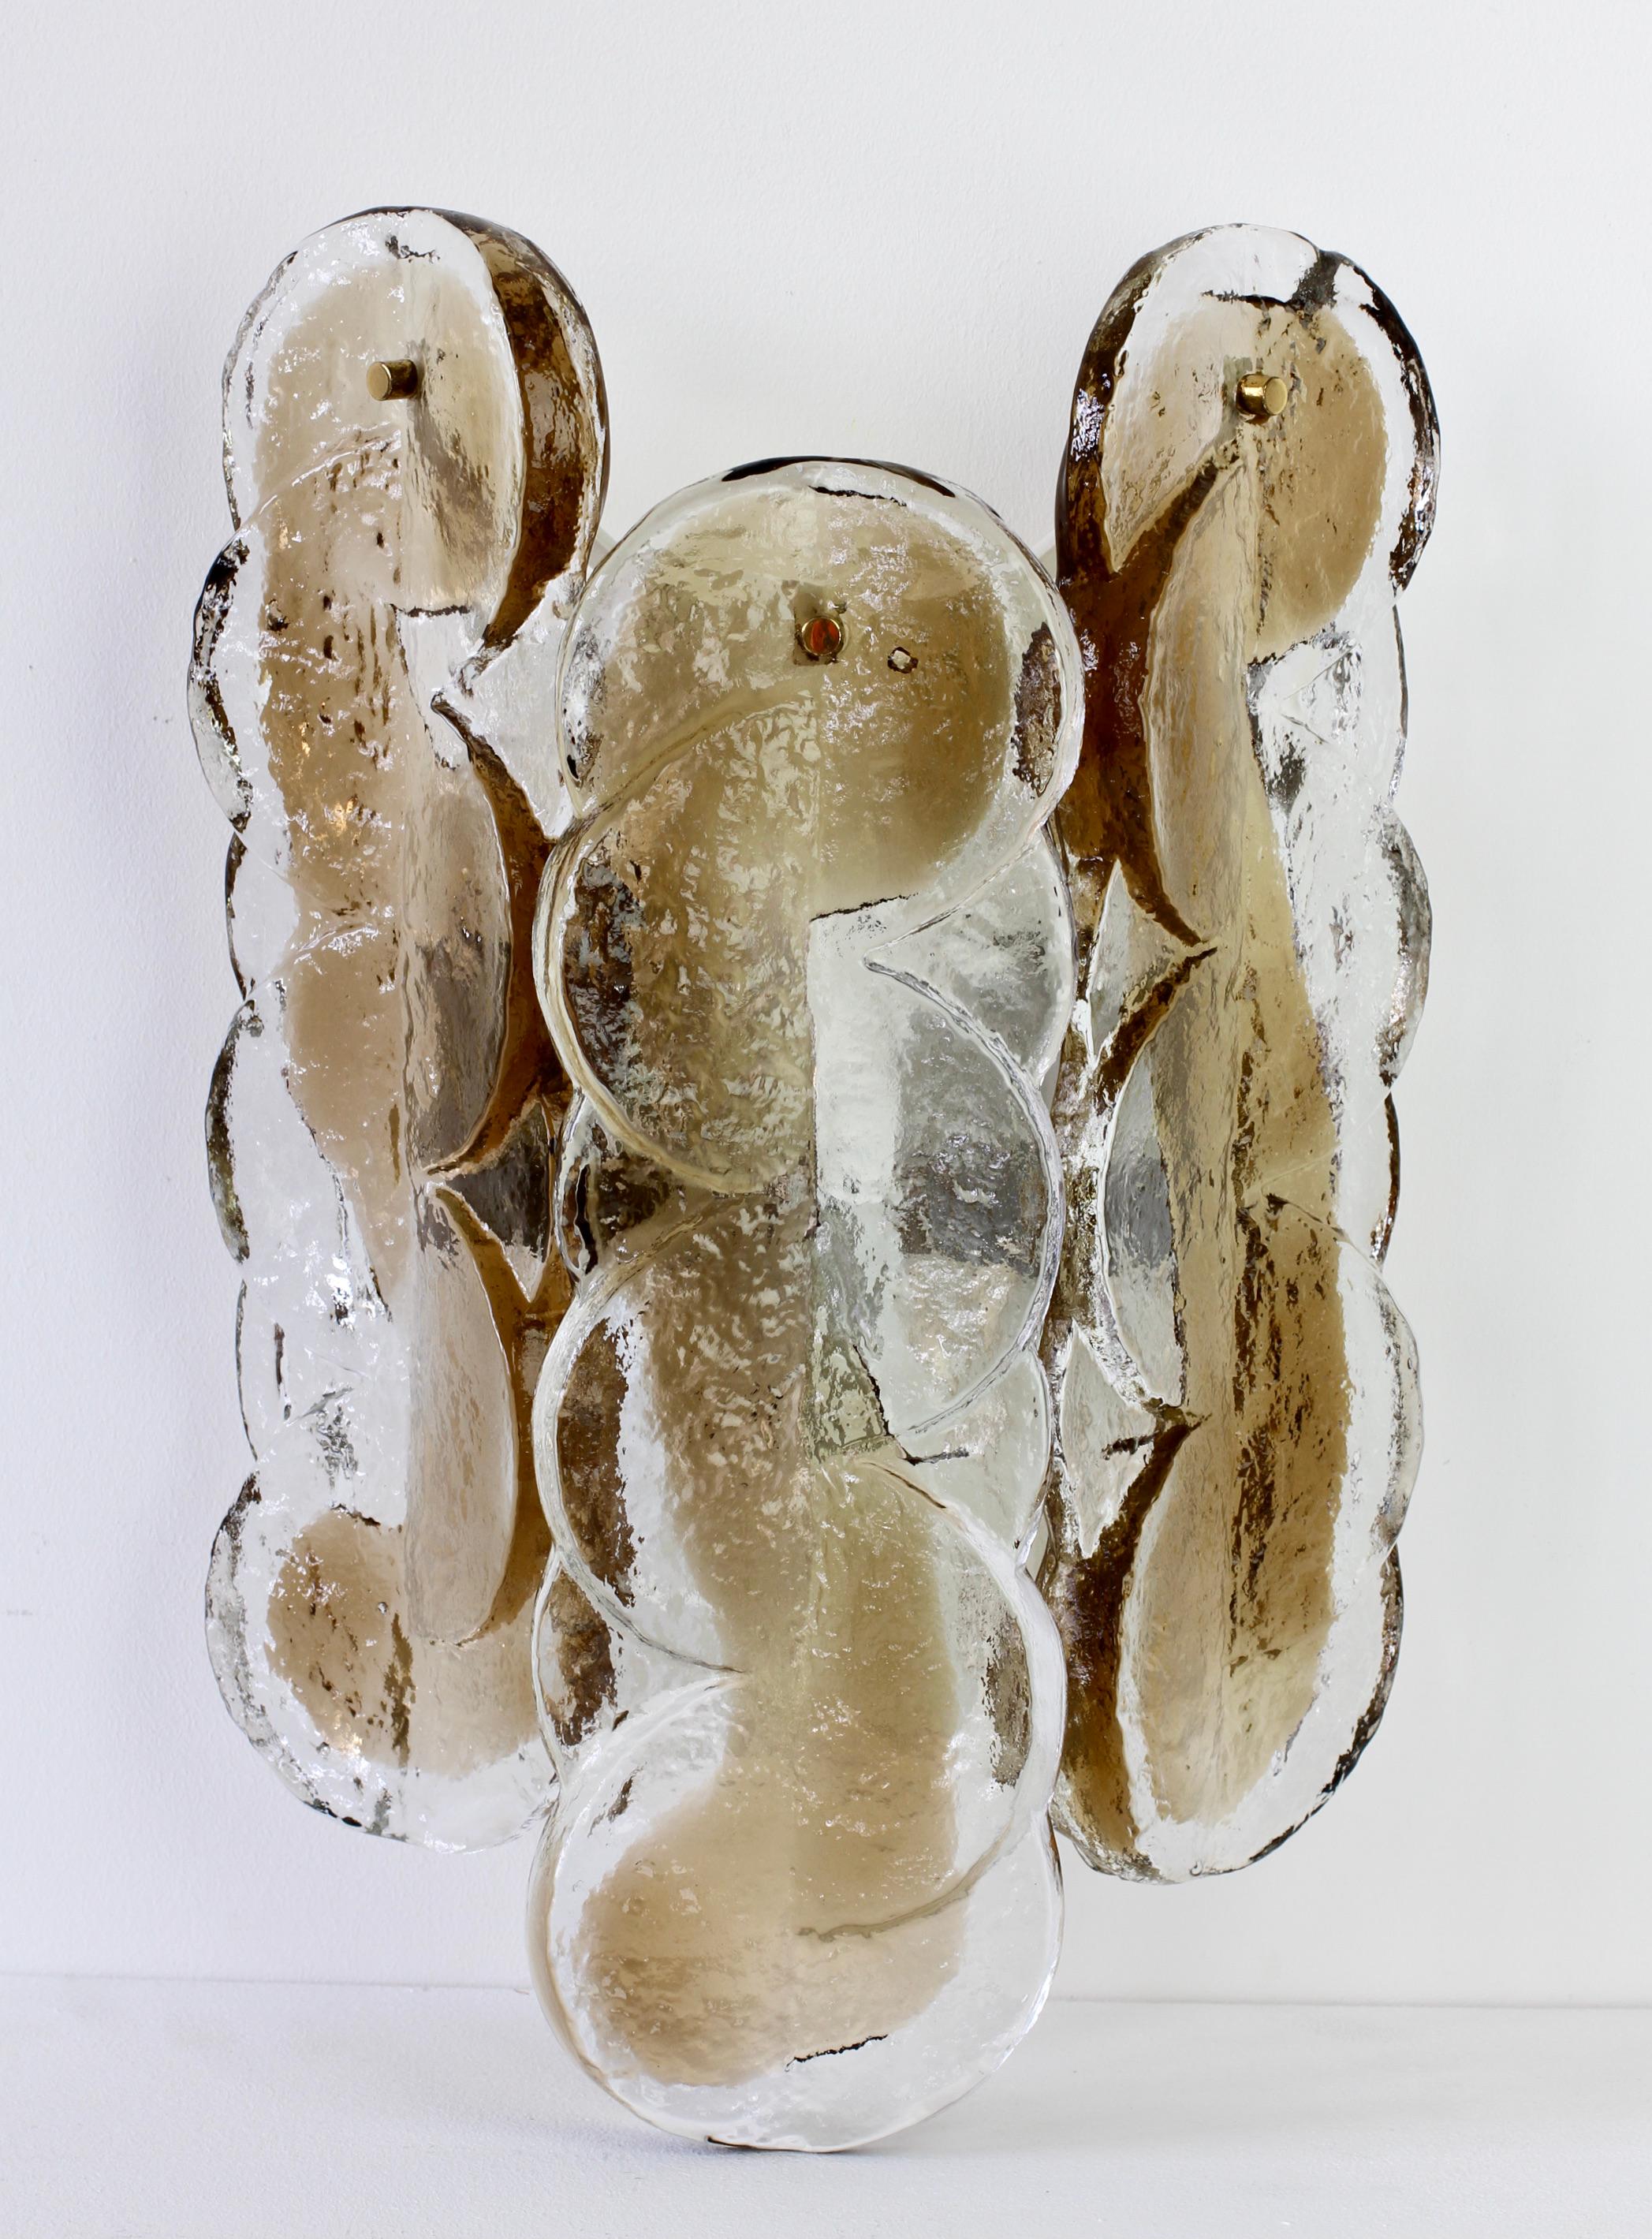 Kalmar, grande et élégante applique murale vintage en verre de glace fondante de fabrication autrichienne, lampe ou applique, fabriquée vers 1970. La lampe/applique présente trois grands éléments en verre texturé en forme de segments d'agrumes avec